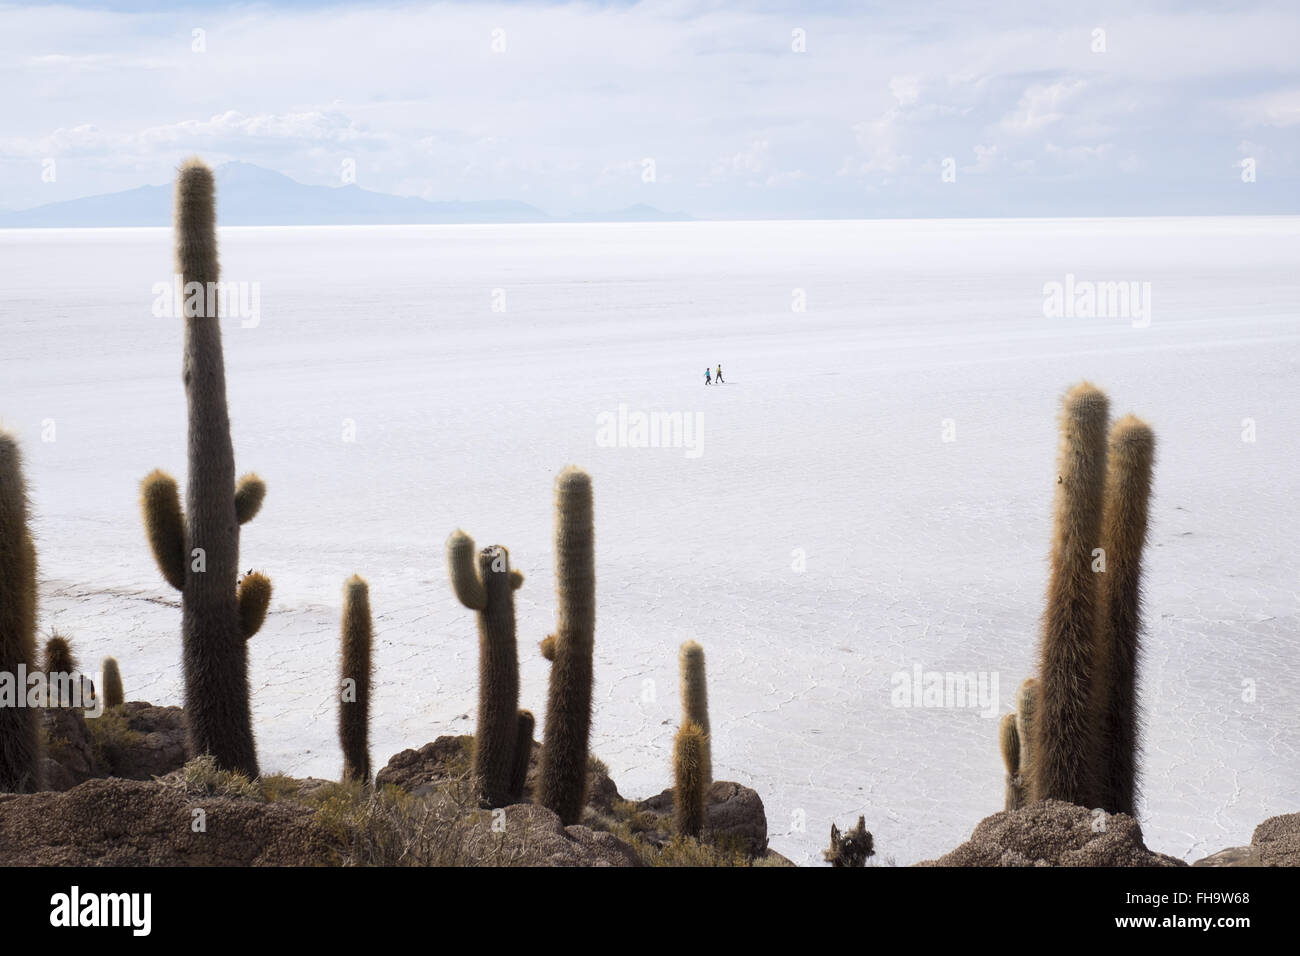 View of Uyuni salt flats from Incahuasi Island Stock Photo